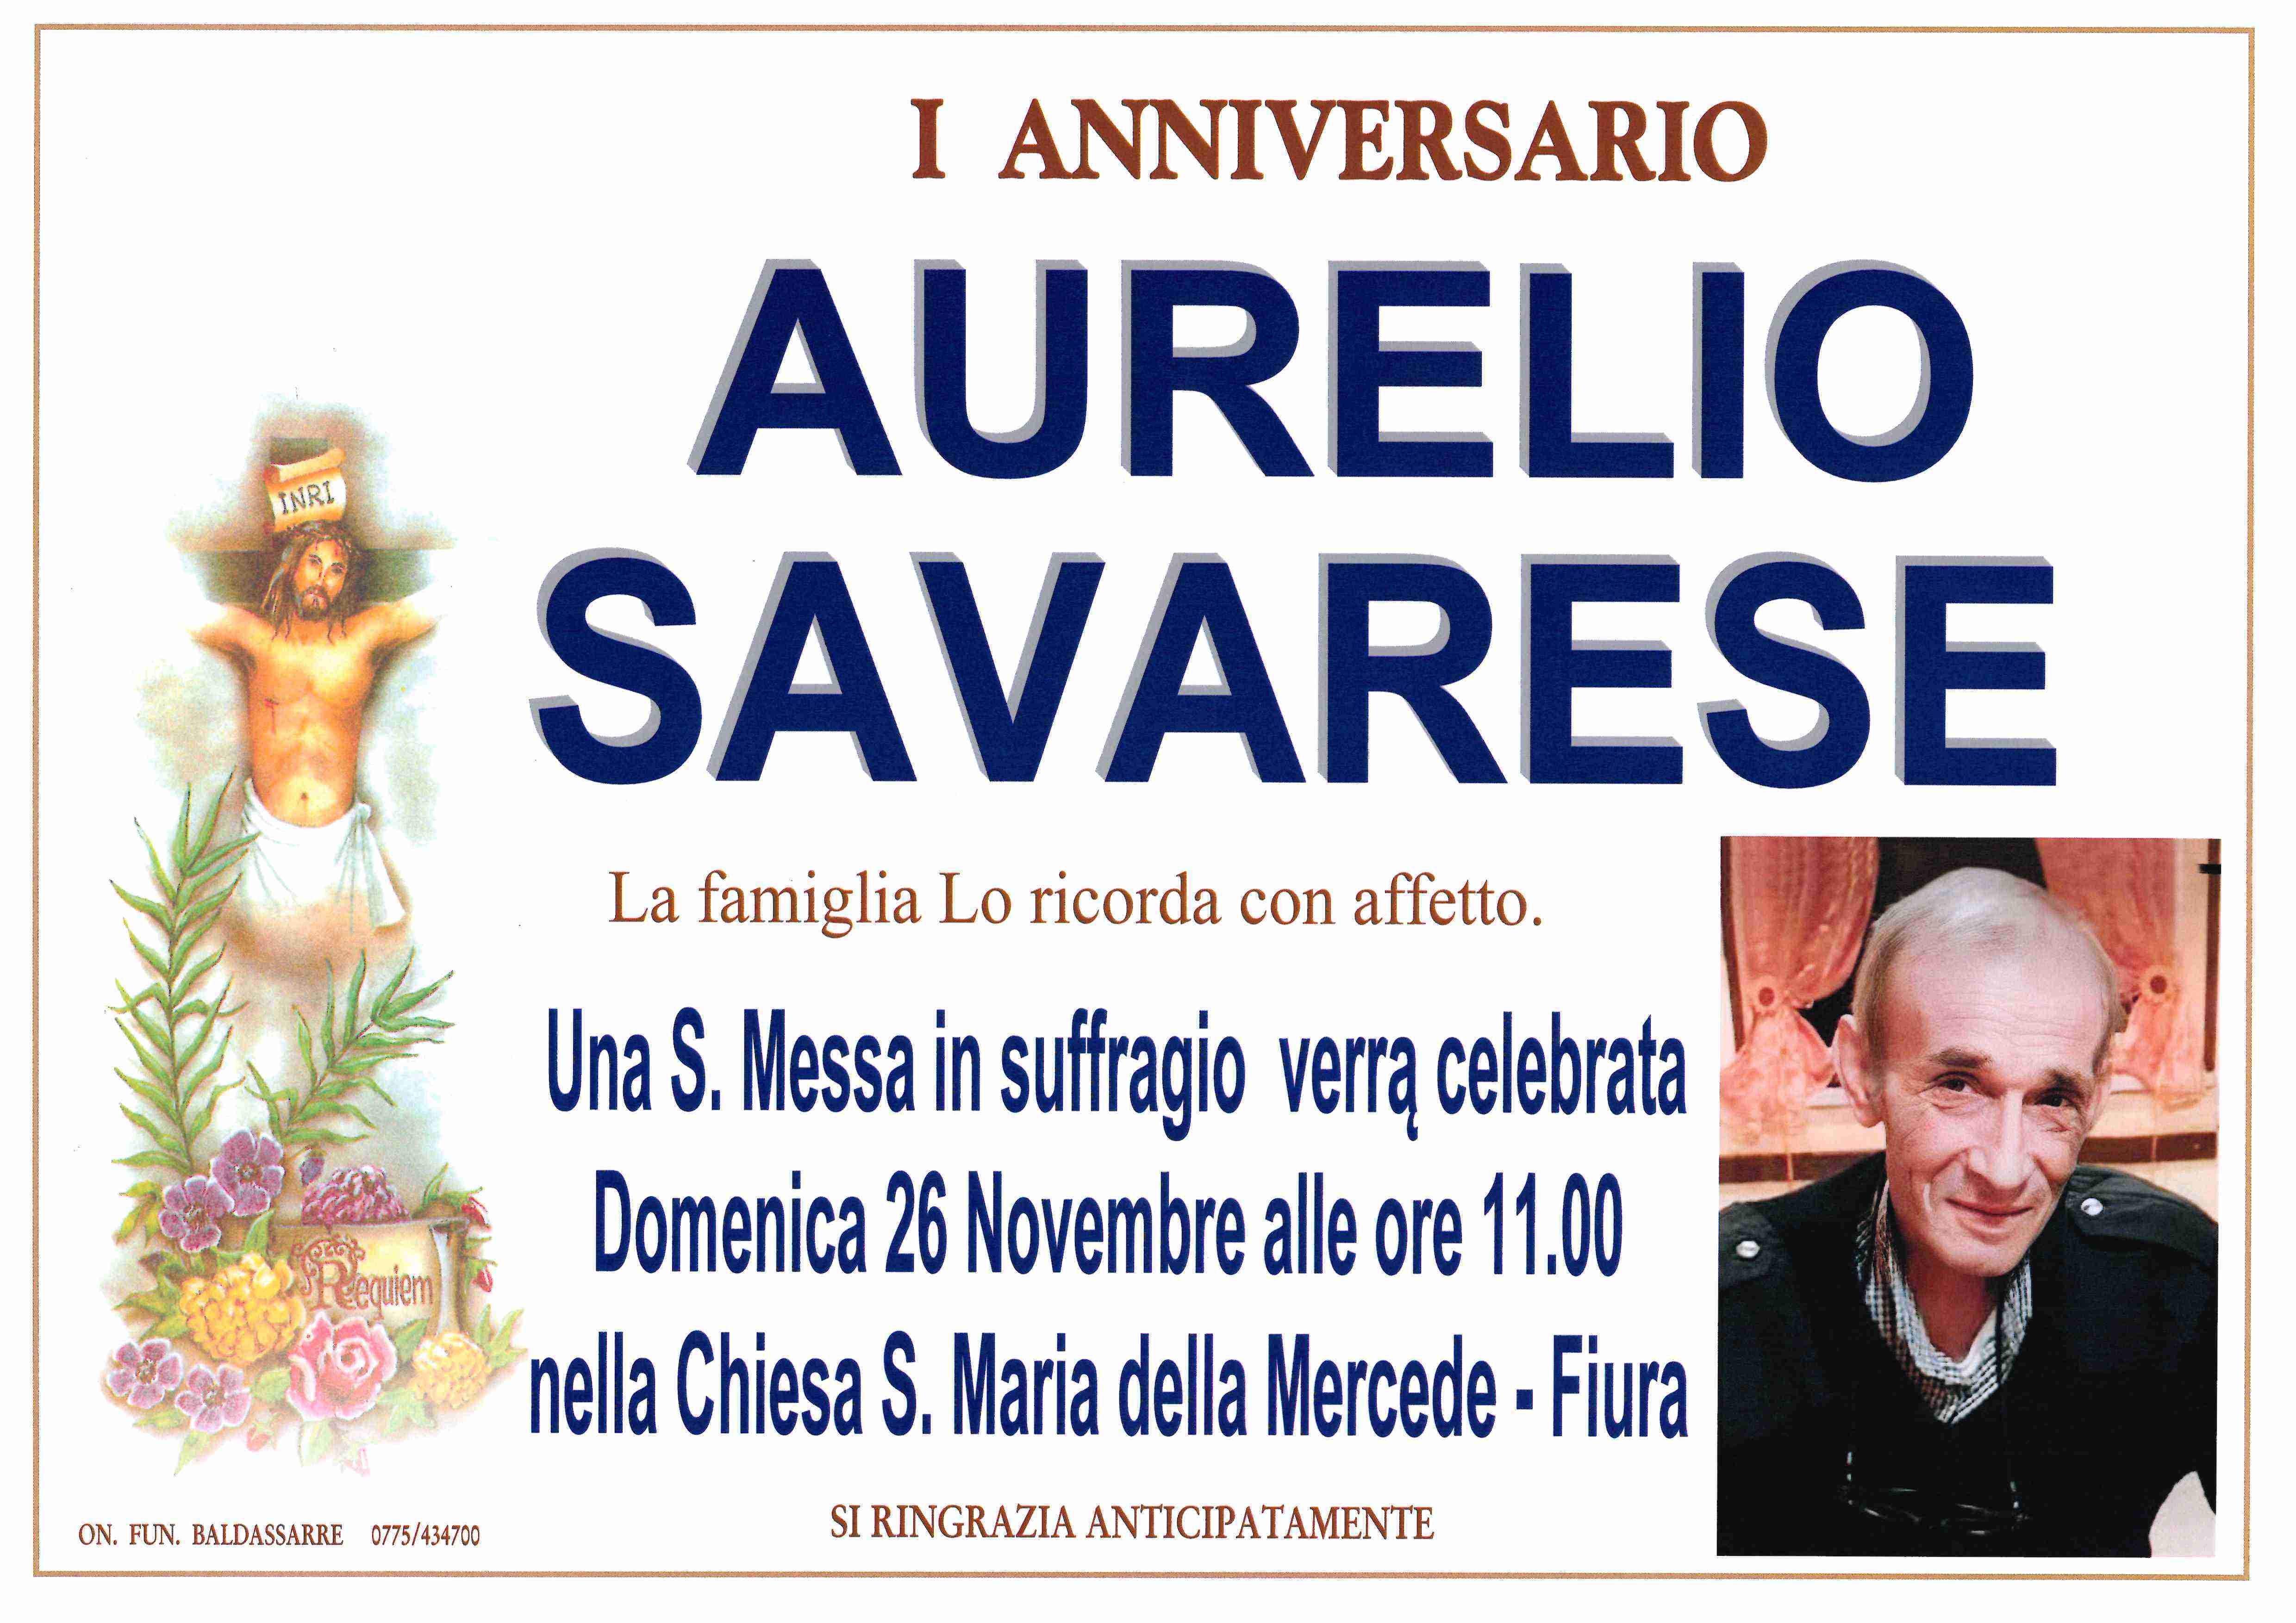 Aurelio Savarese